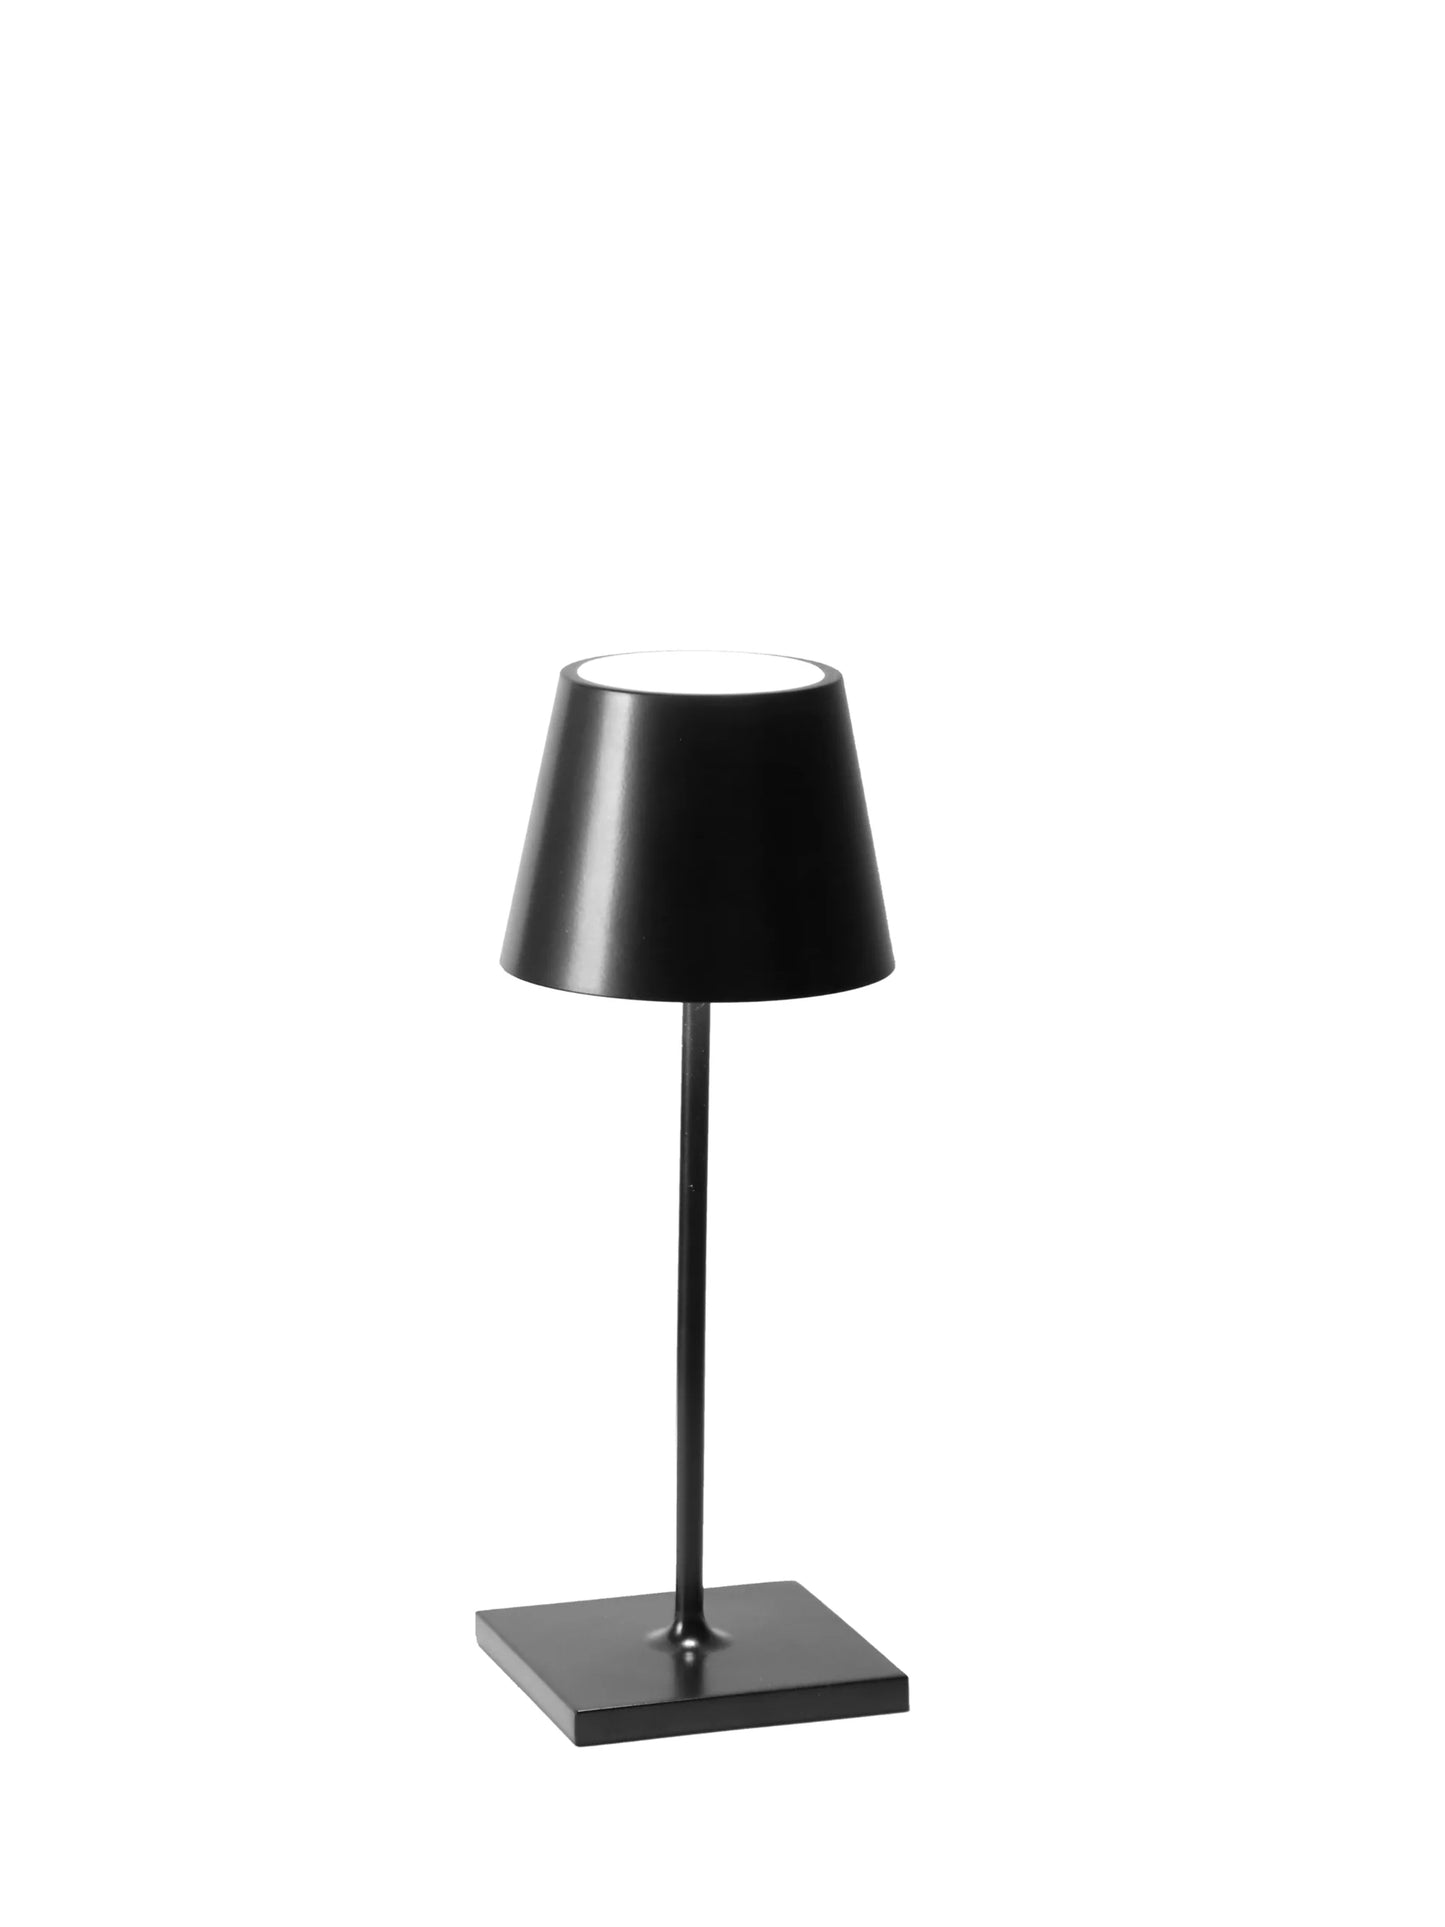 Poldina Lamp Collection